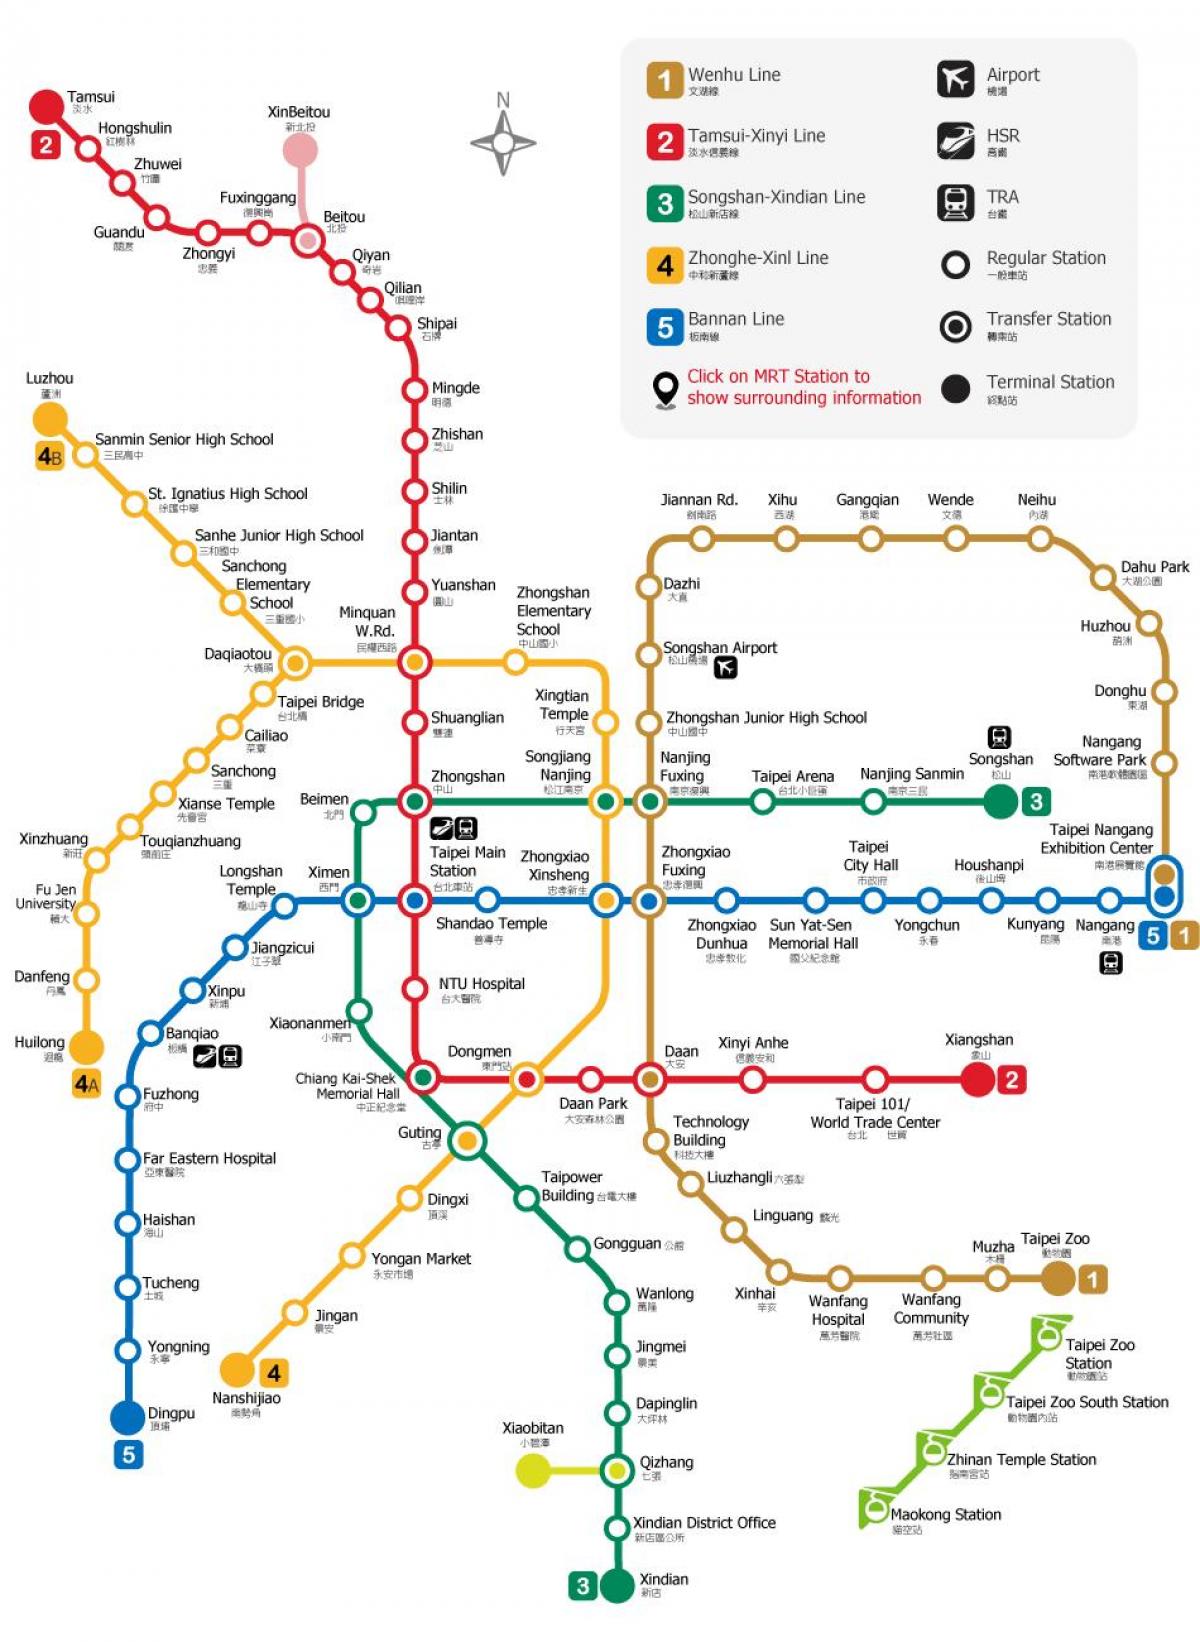 La estación ferroviaria de Taipei mapa